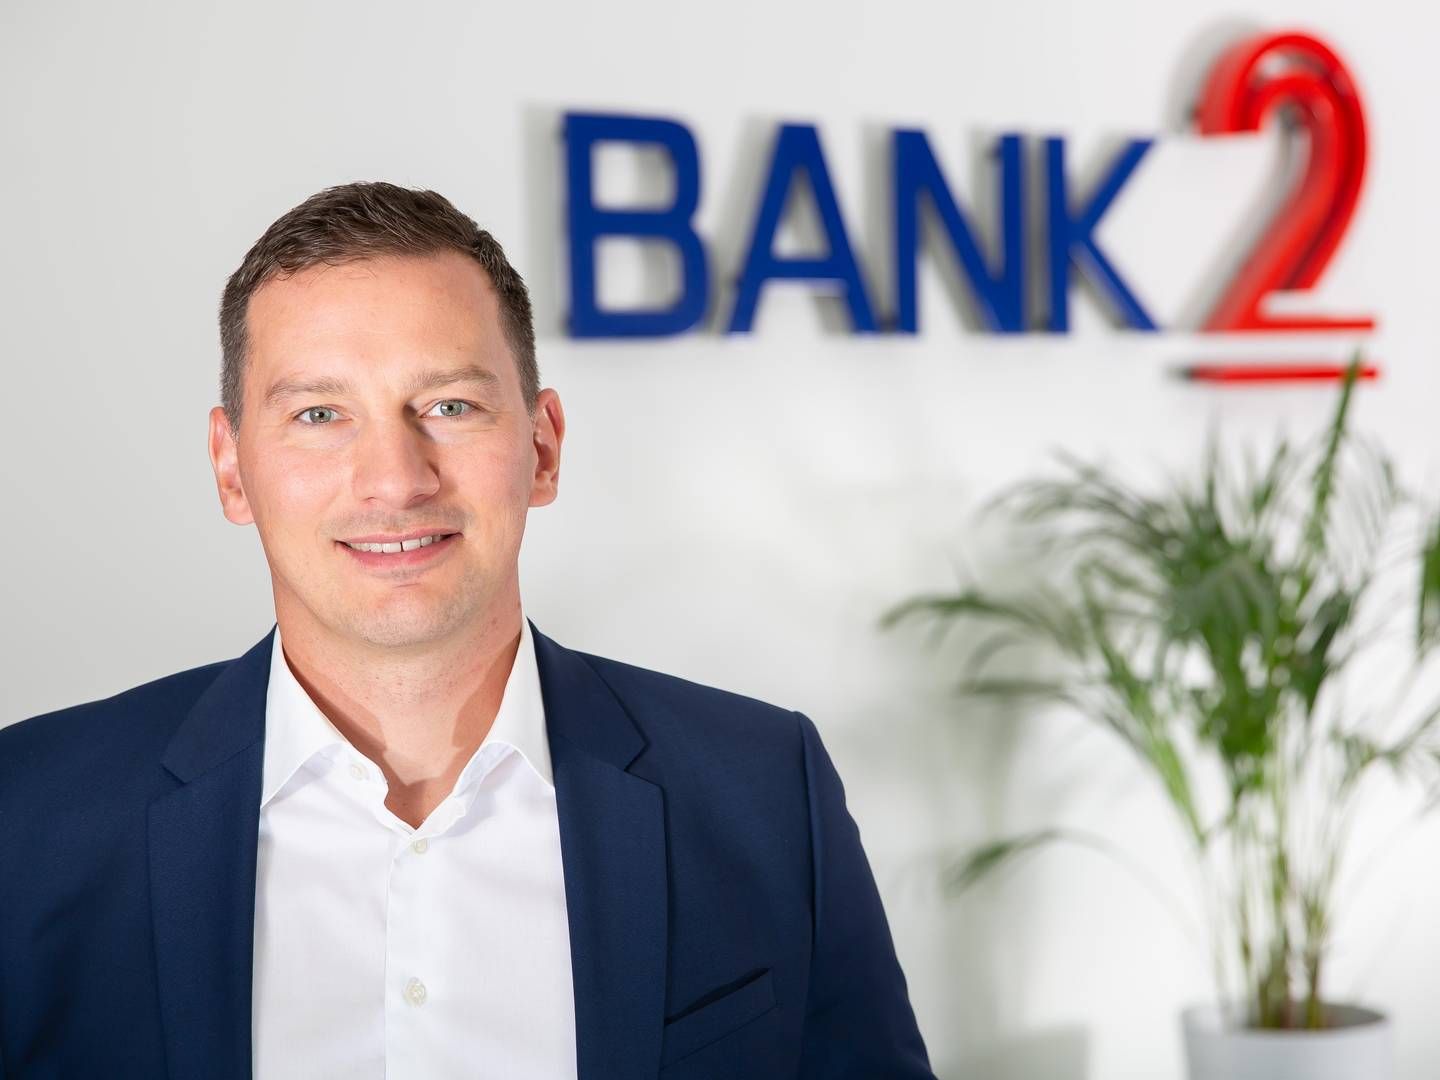 NORGESSJEF: Sebastian Mikolajczyk er ny Norgessjef i Bank2. | Photo: Bank2